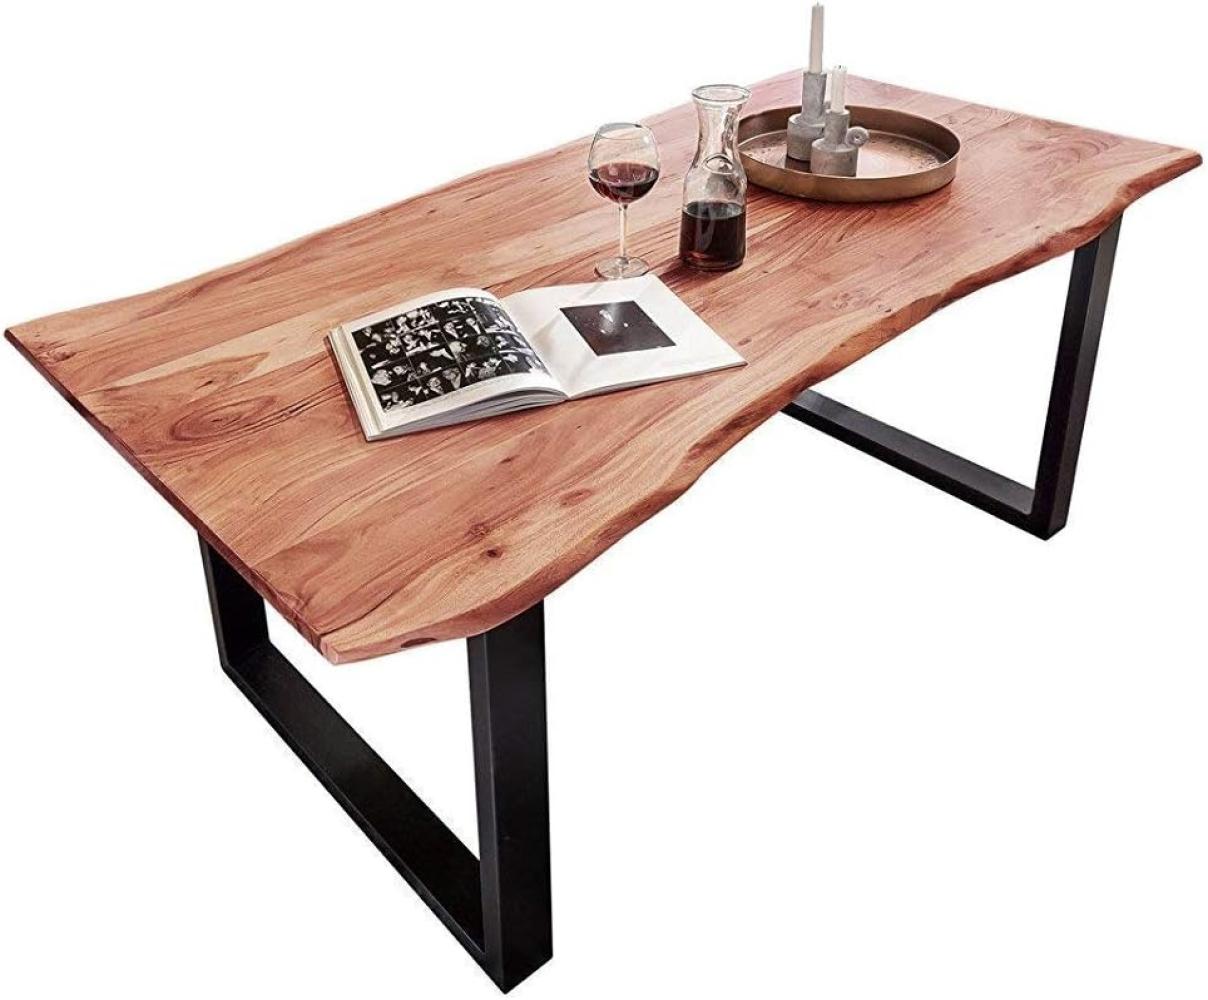 SAM Baumkantentisch 200x100 cm Quarto, Esszimmertisch aus Akazie, Holz-Tisch mit schwarz lackierten Beinen Bild 1